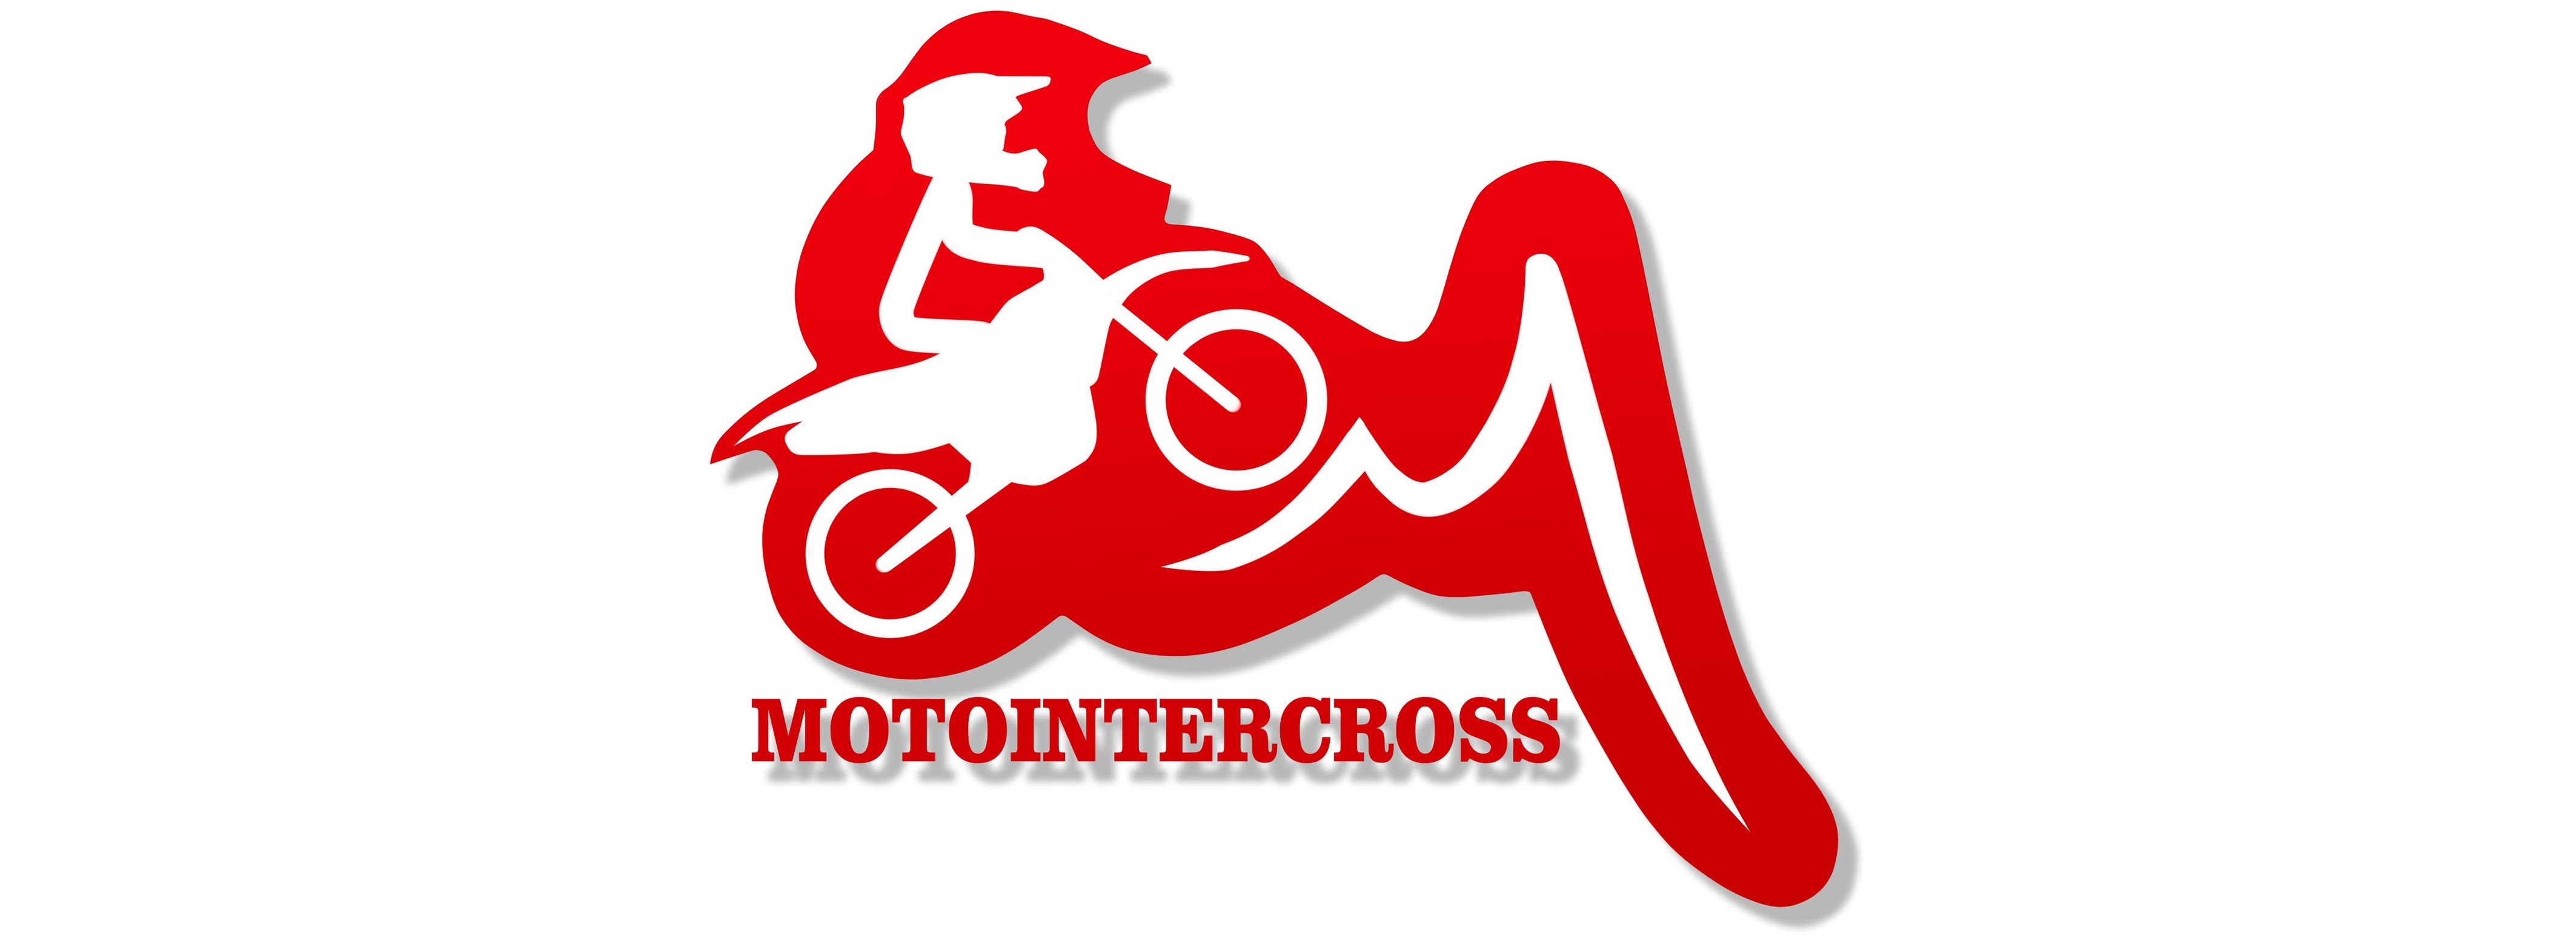 MotoIntercross - запчасти и мототехника